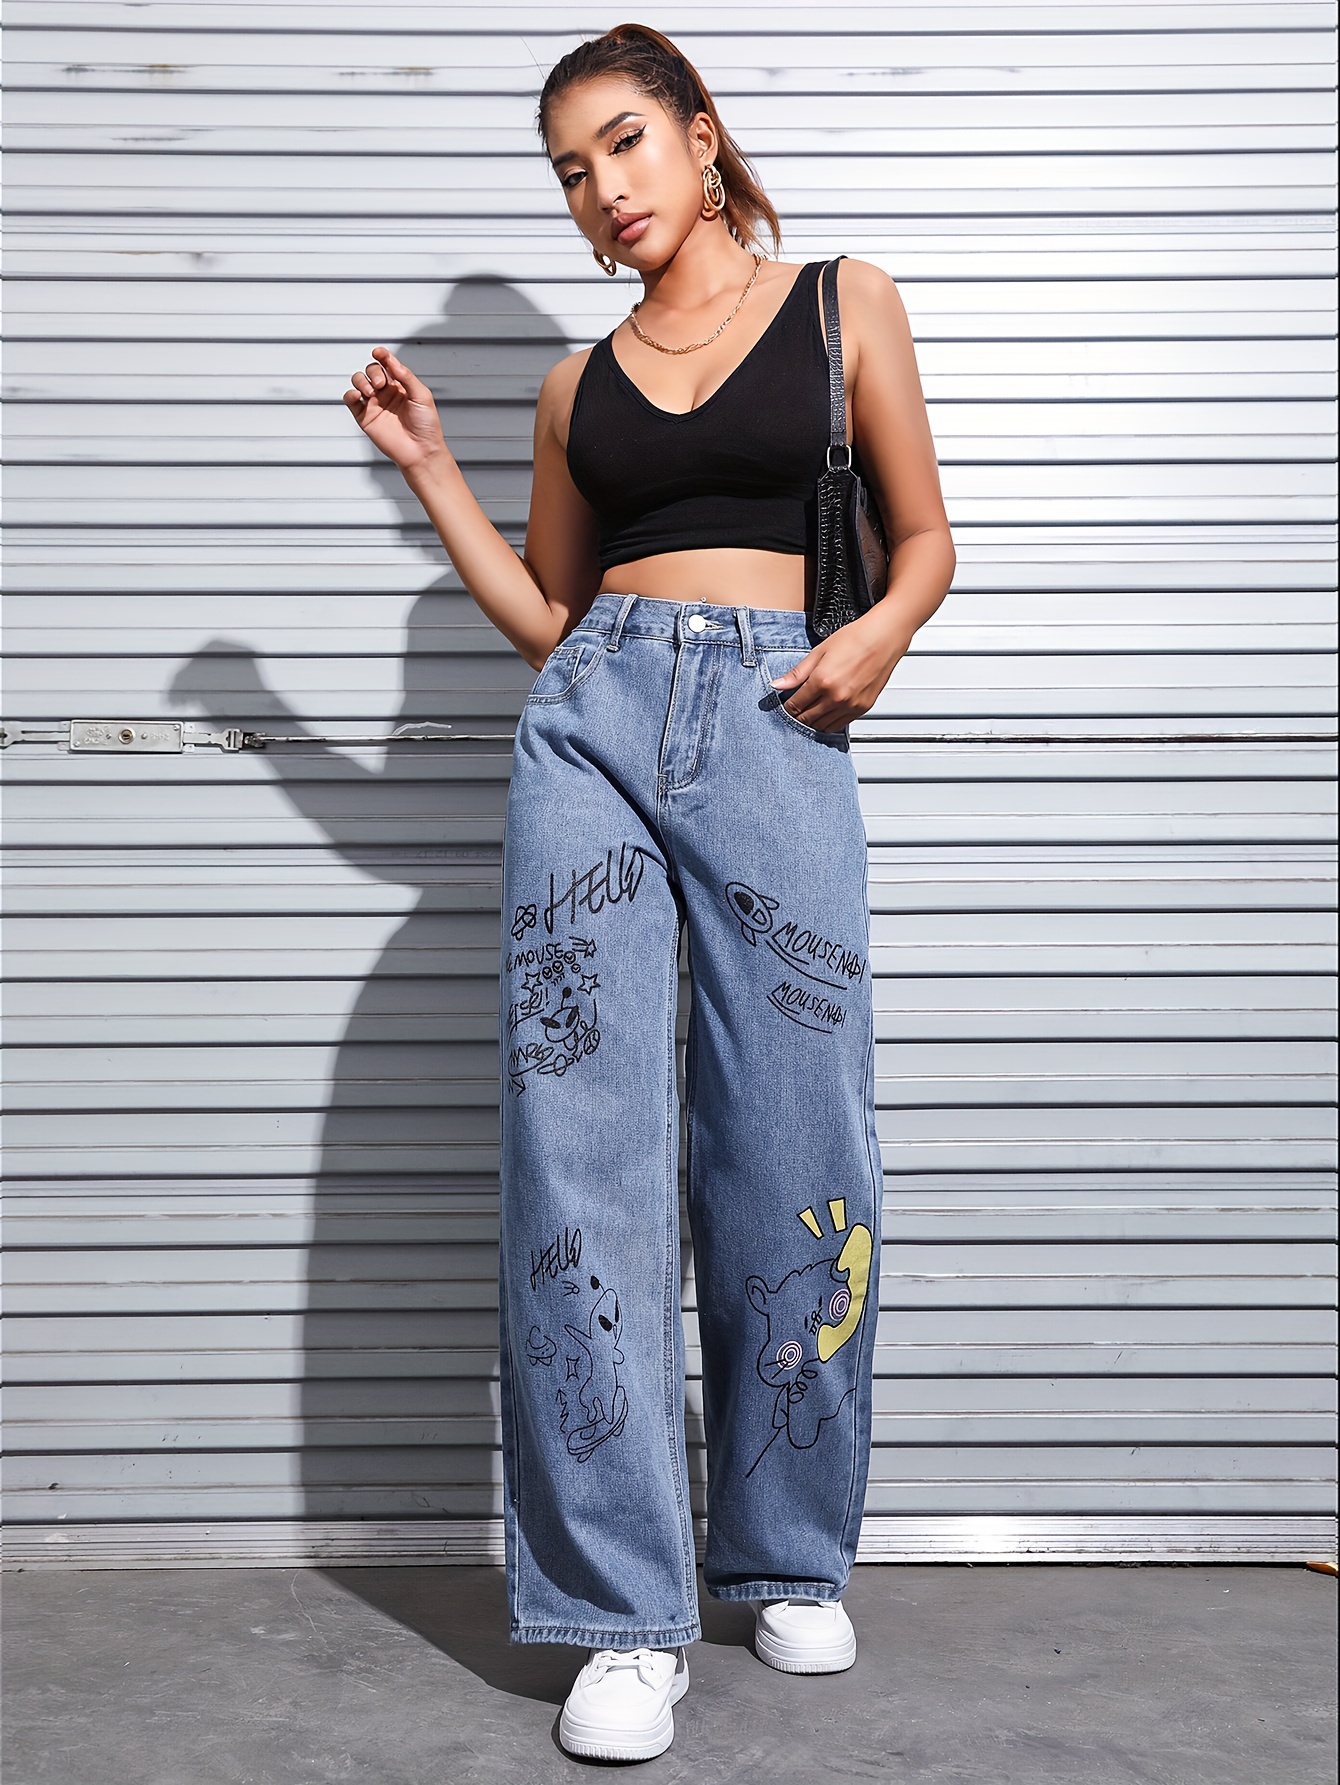 YWDJ Pants for Women Trendy Women Fashion Casual Jeans Print